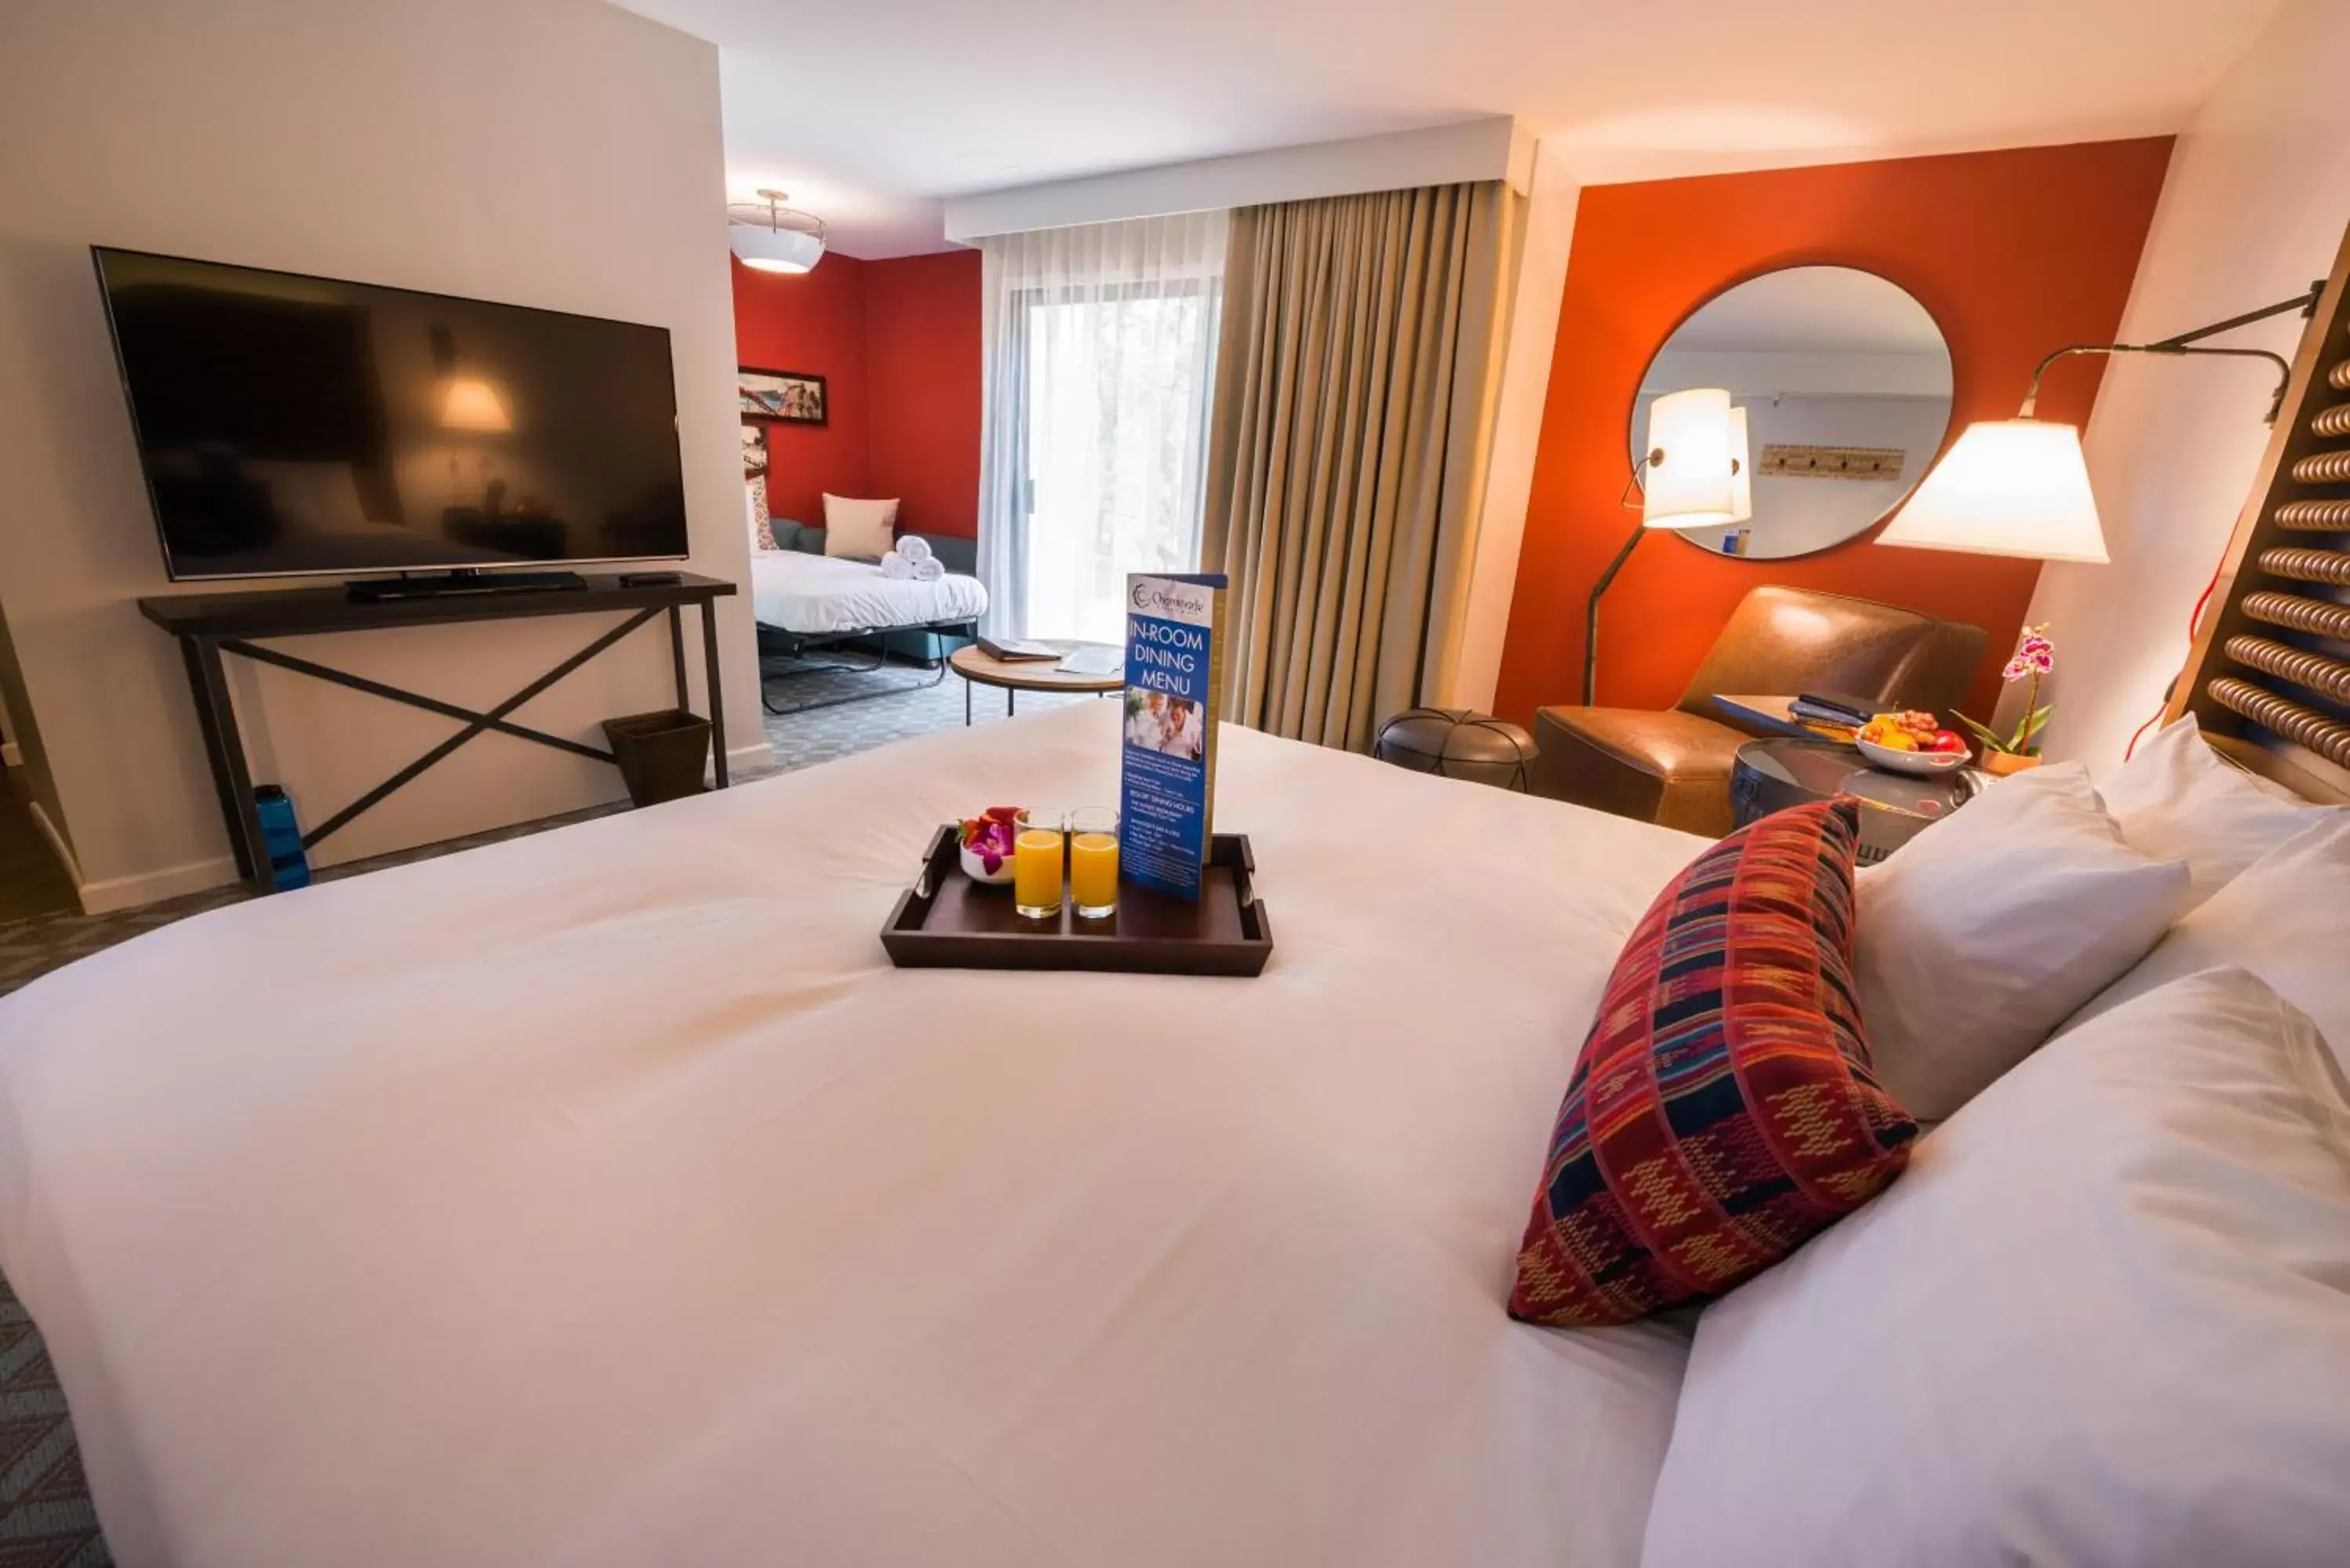 Bedroom, TV/Entertainment Center in Chaminade Resort & Spa